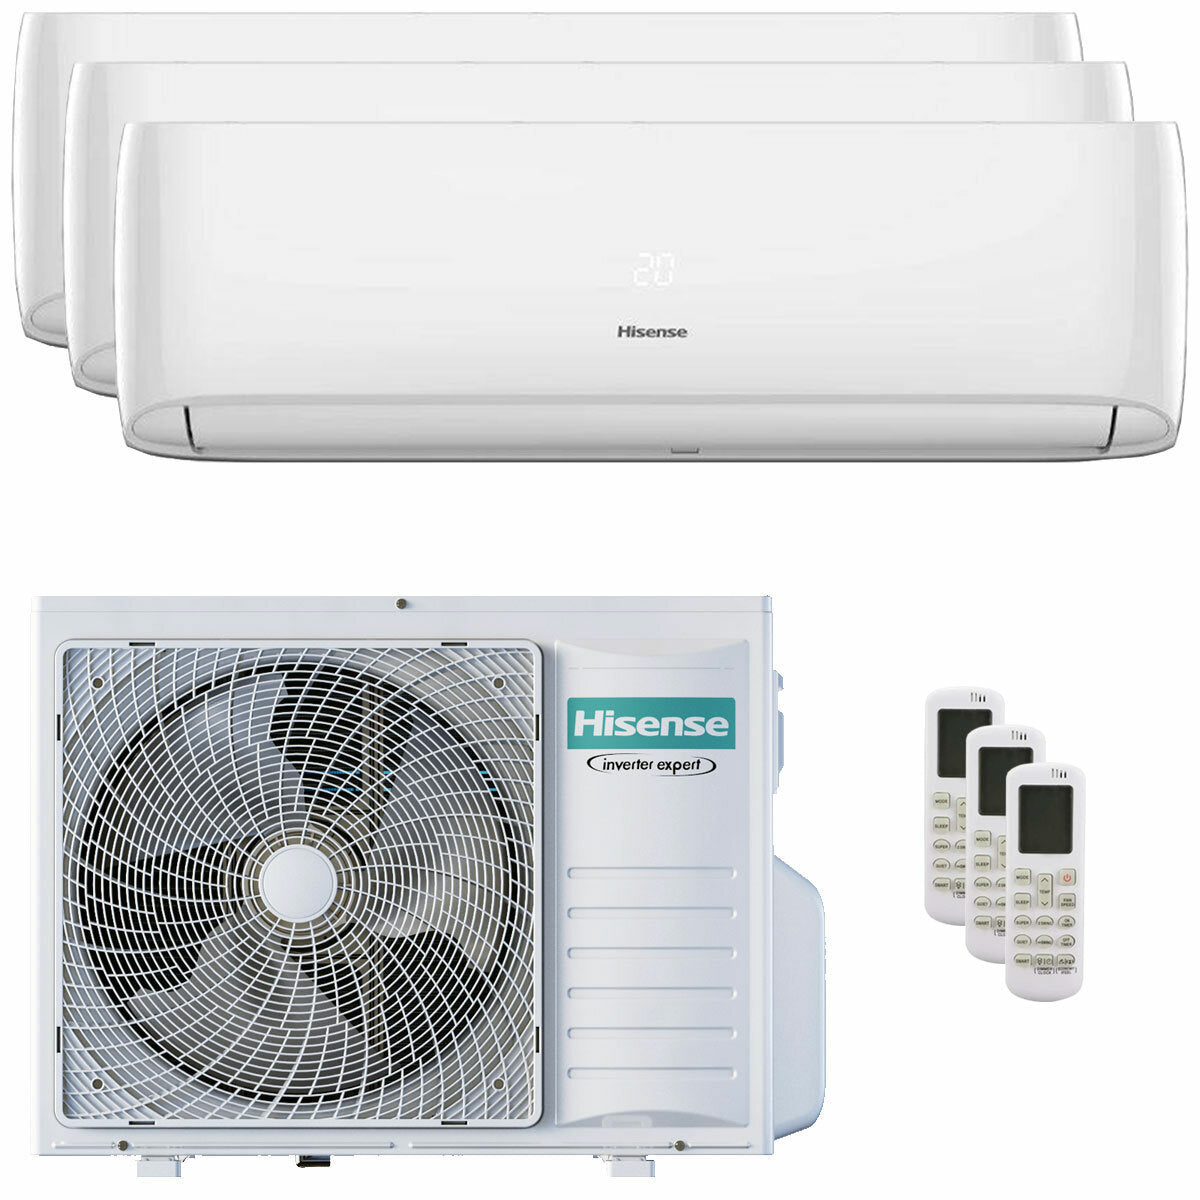 Hisense Hi-Comfort trial climatiseur split 12000+12000+12000 BTU onduleur A++ wifi unité extérieure 8 kW